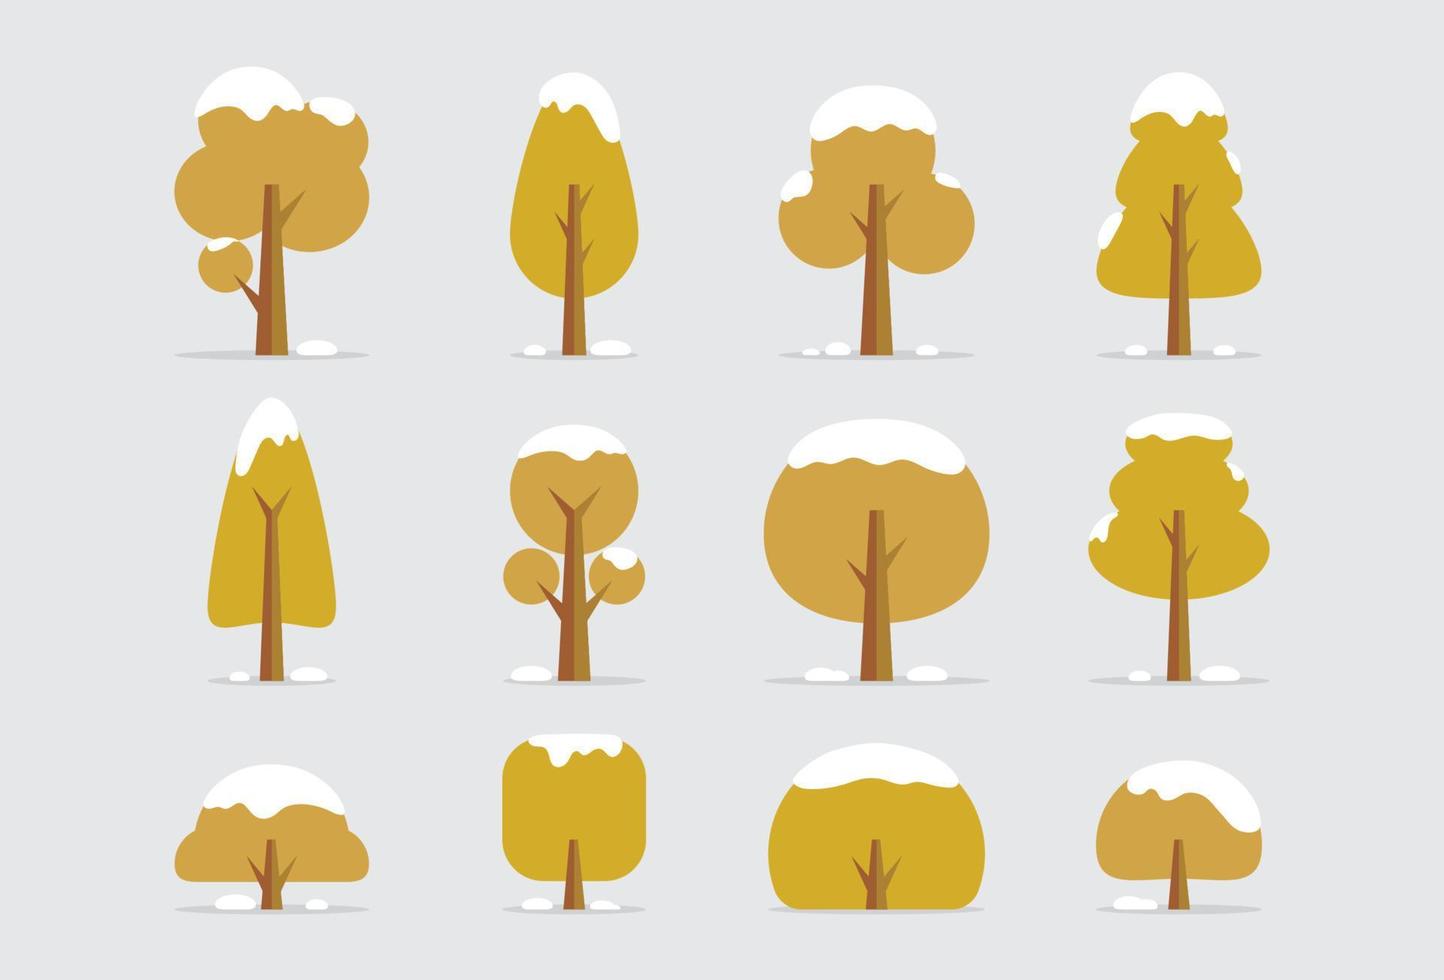 buissons d'arbres de dessin animé plat en hiver vecteur